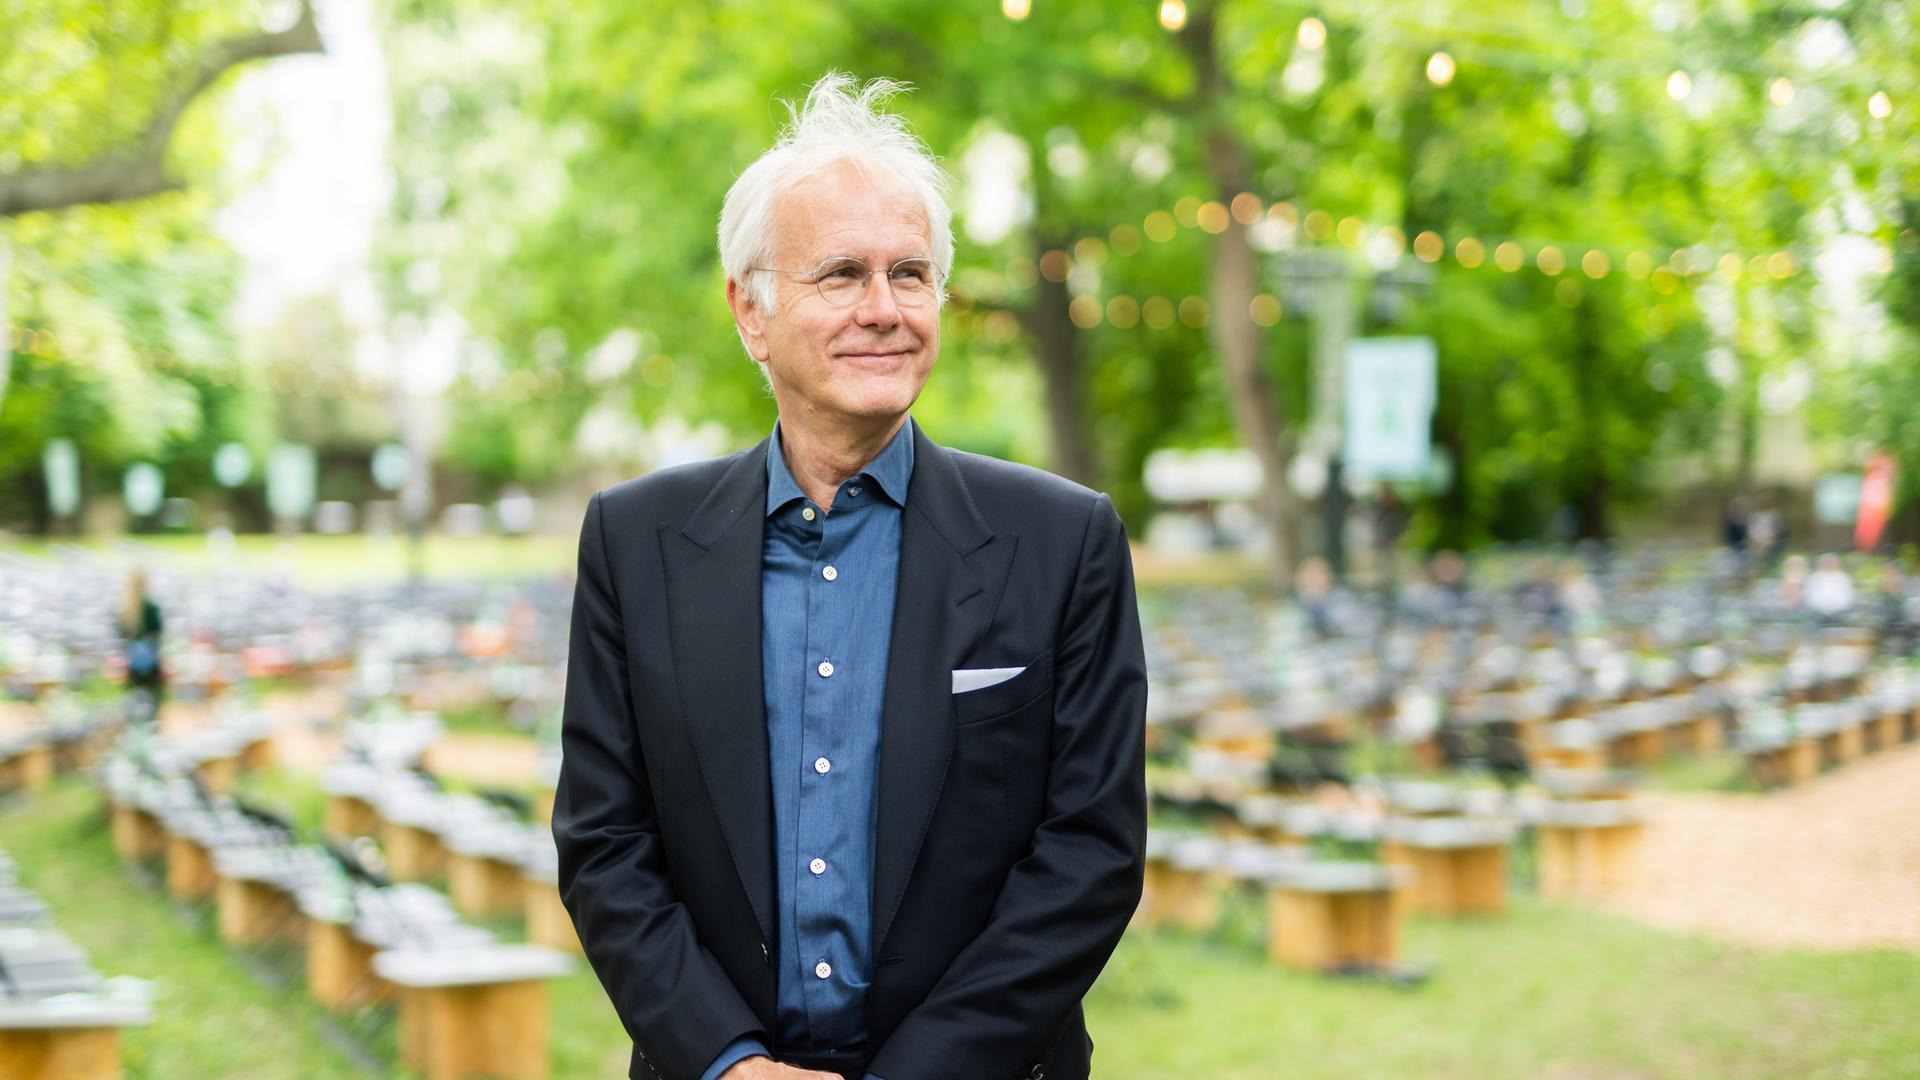 Harald Schmidt steht schmunzelnd und zur Seite schauend in einem Garten, im Hintergrund sind Sitzhocker zu sehen. Er trägt Brille, einen schwarzen Anzug und ein blaues Hemd.